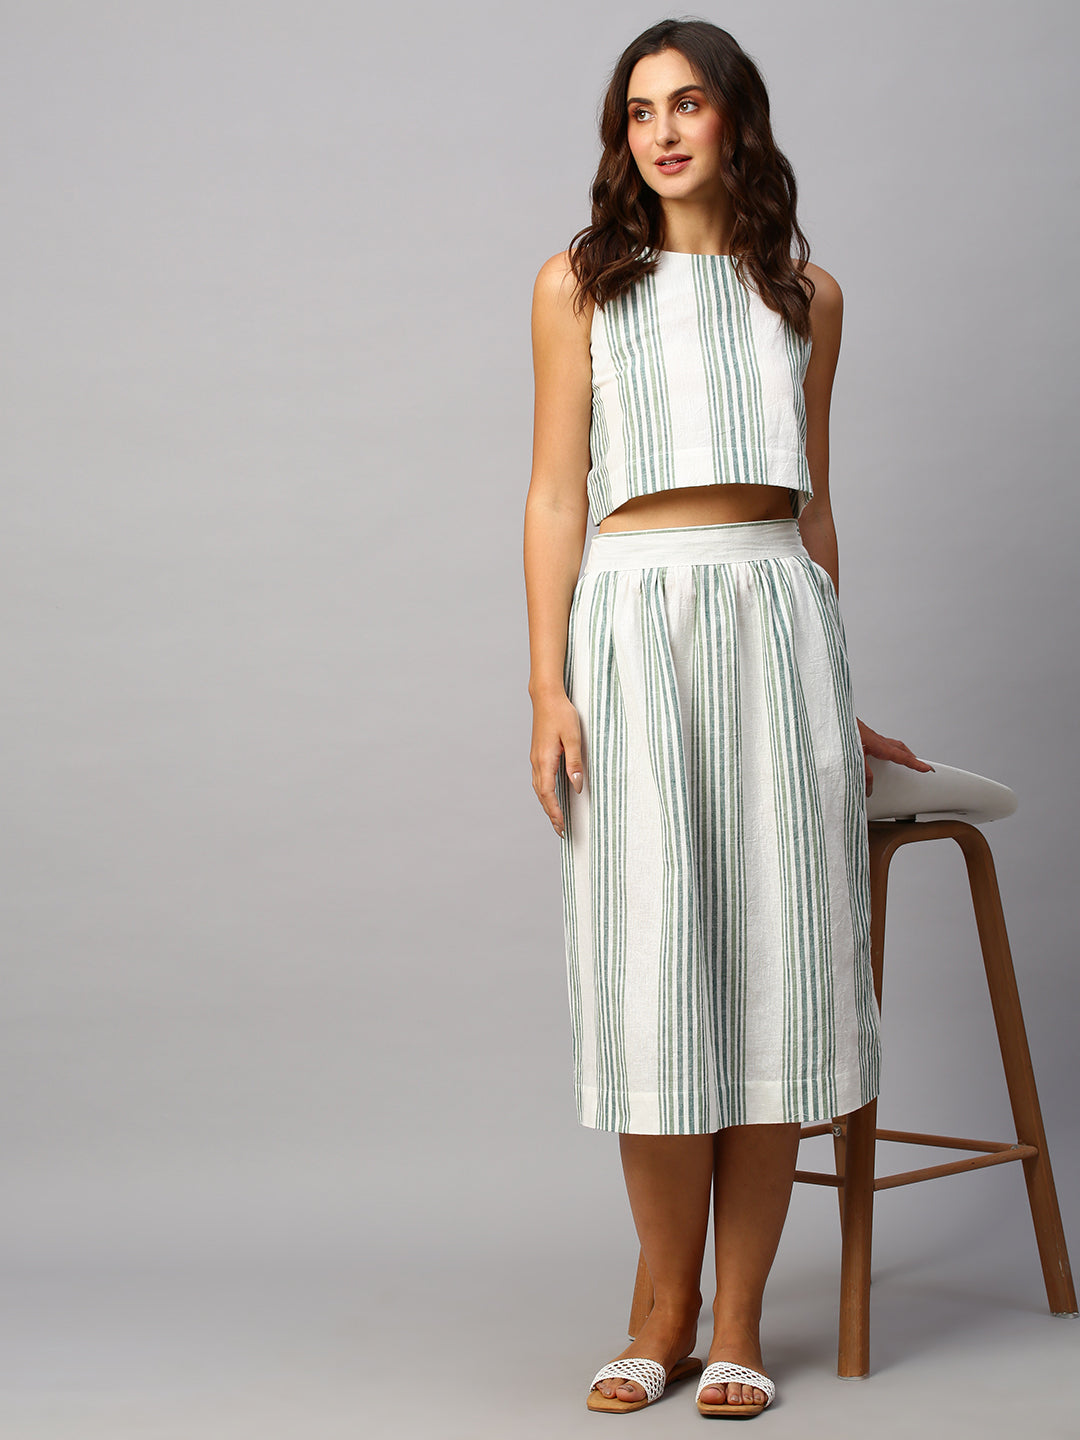 Buy Women's Cotton Linen Casual Wear Regular Fit Skirt